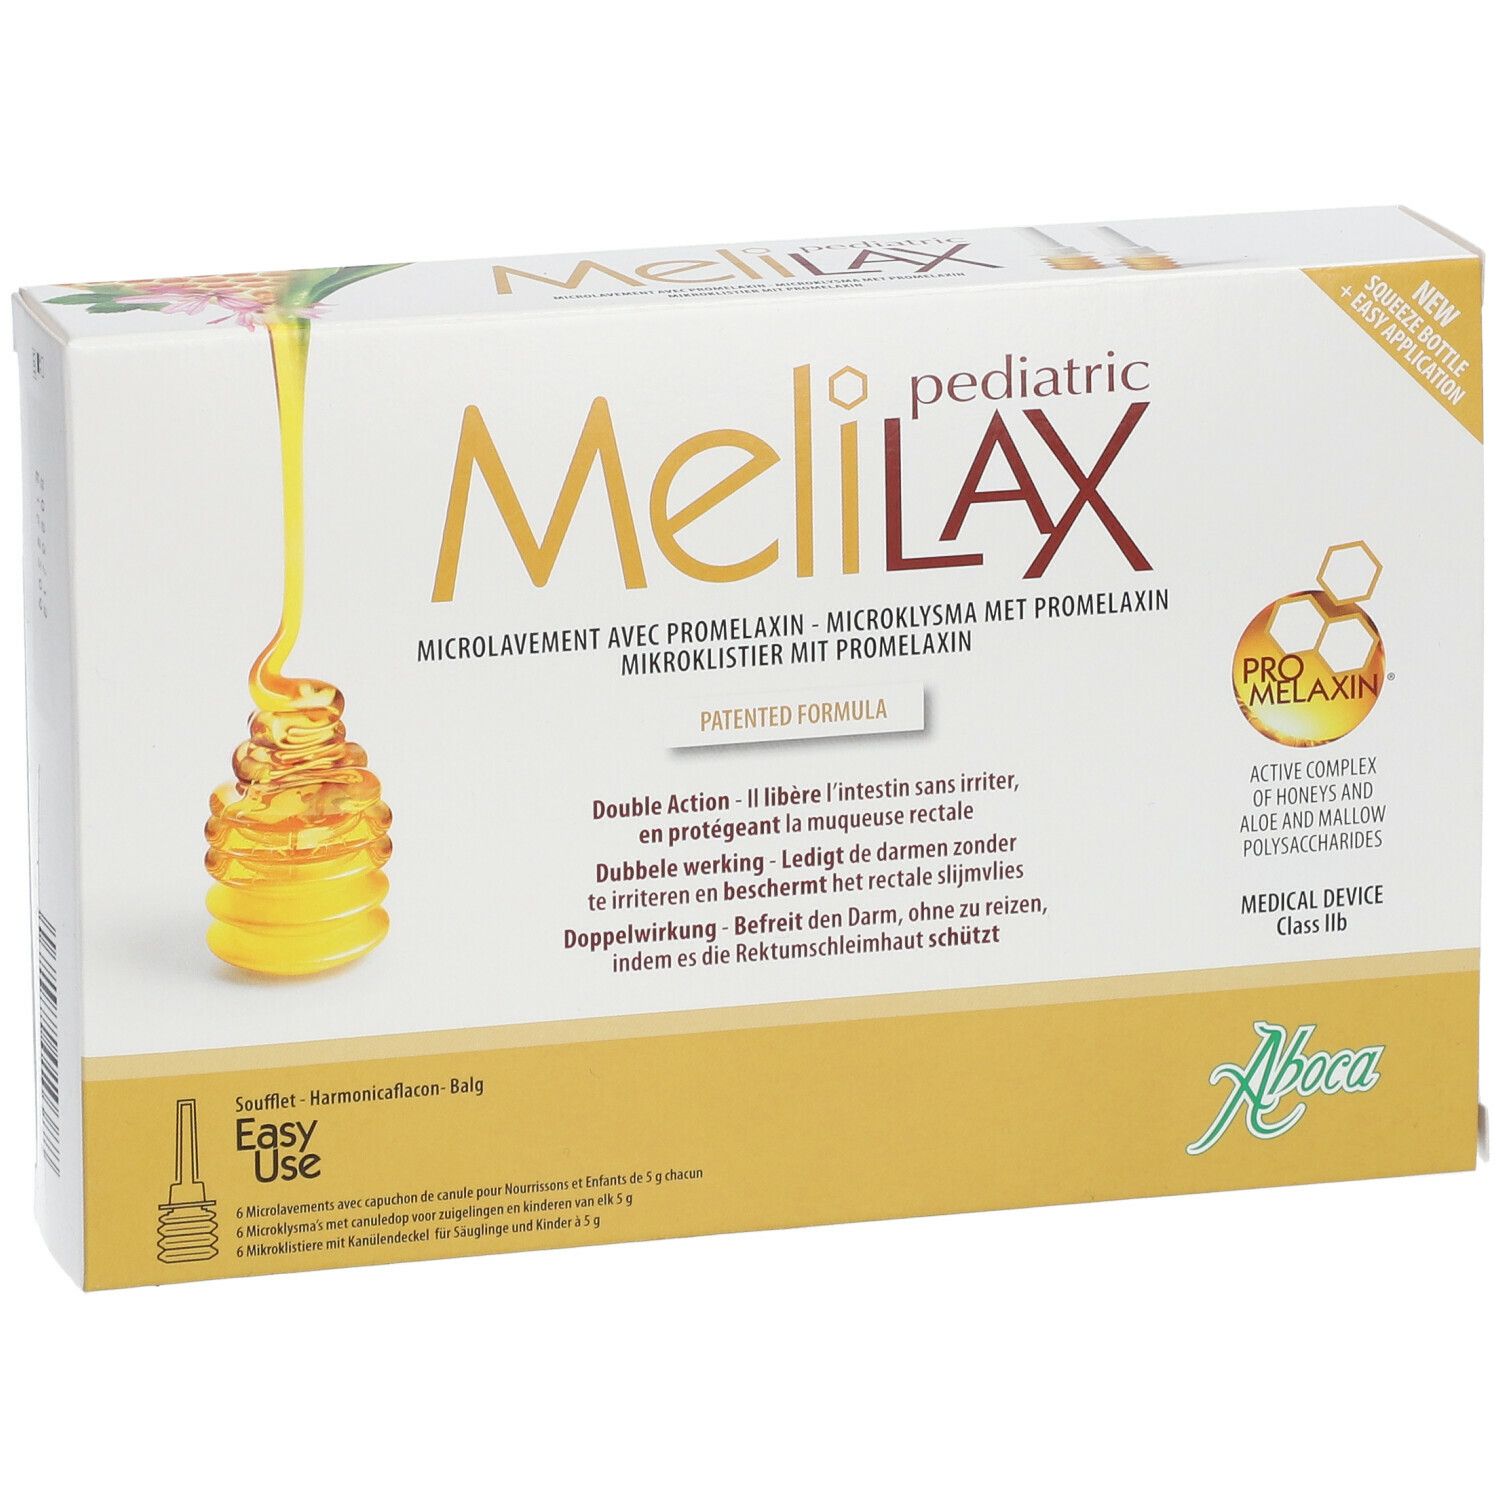 Aboca Melilax Pediatrique Lavement 6x5 g - Redcare Apotheke